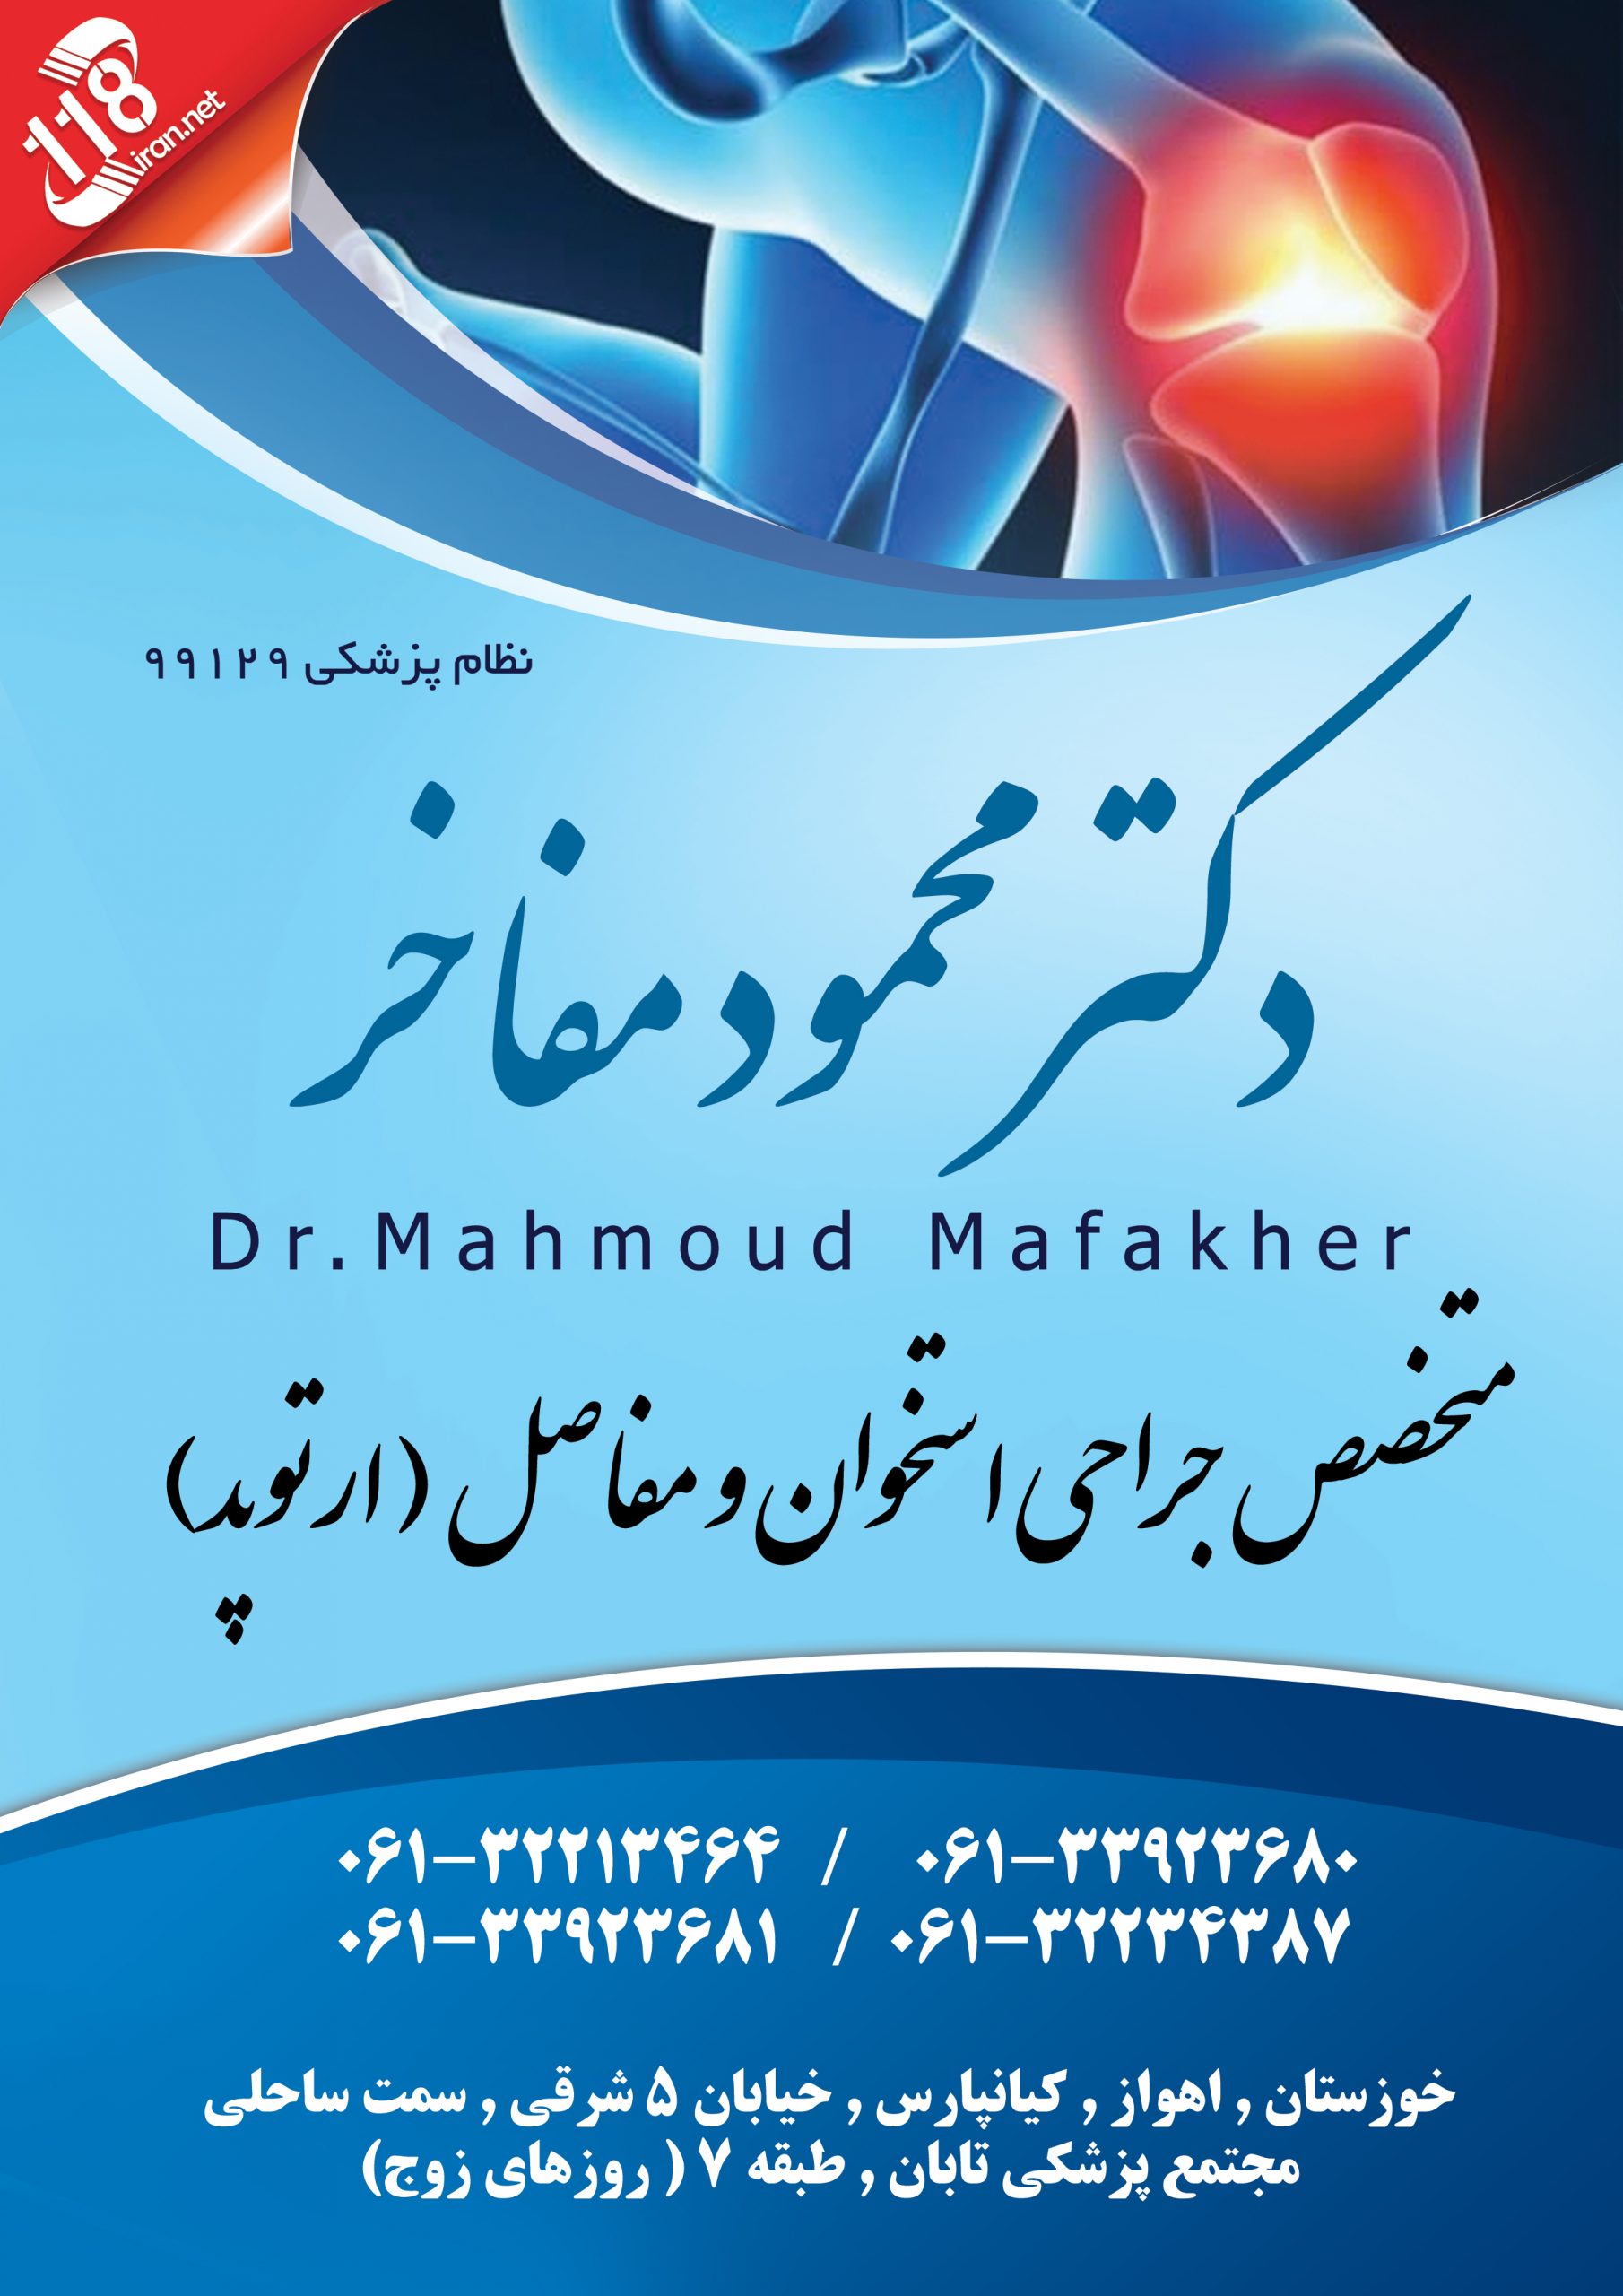 دکتر محمود مفاخر در اهواز
